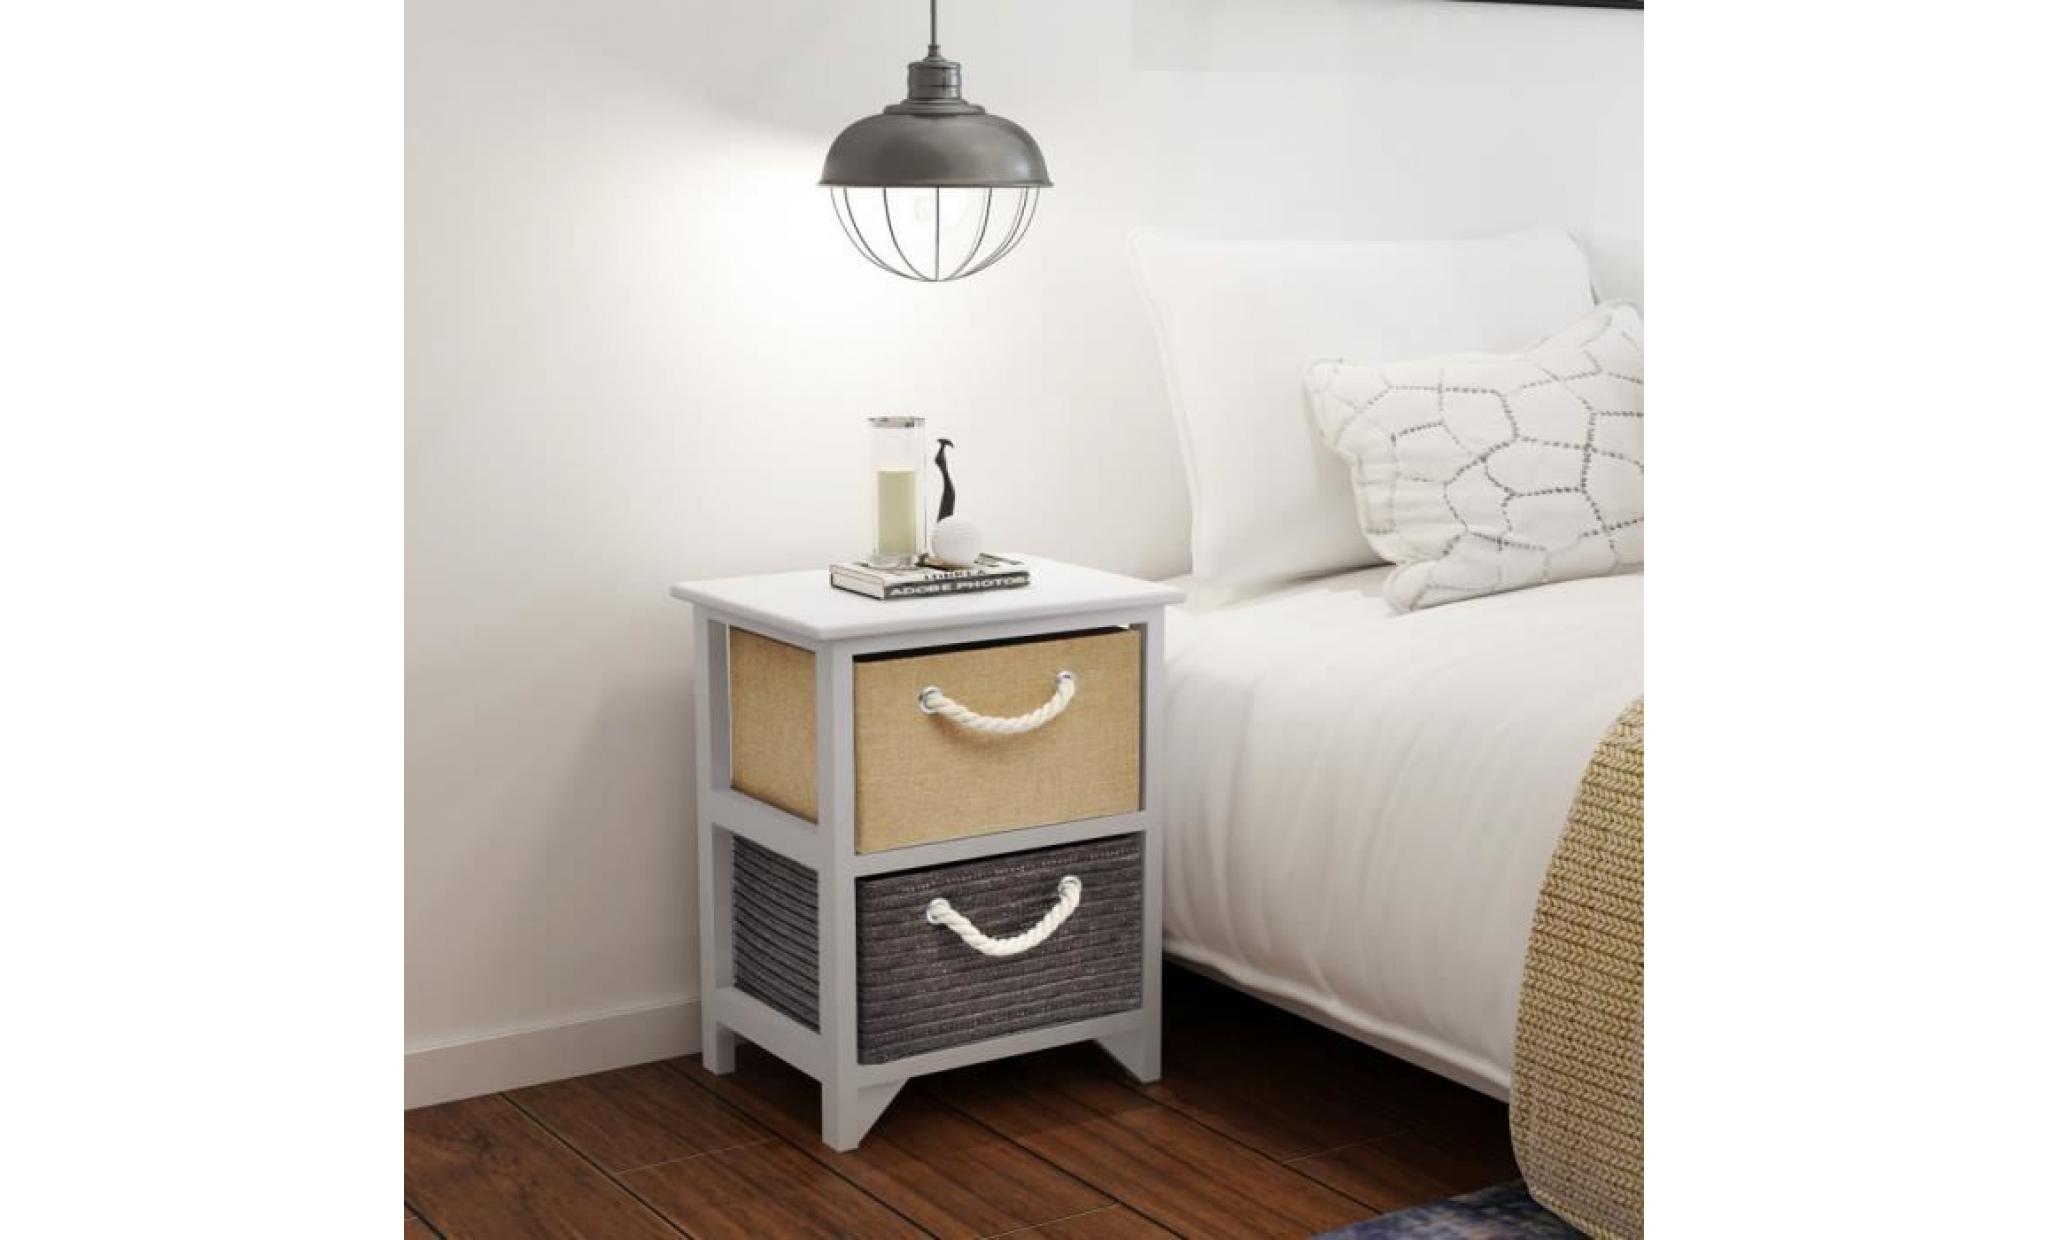 cet armoire attrayante avec 2 tiroirs sera le point central de votre espace de vie, salon ou chambre à coucher. elle peut être